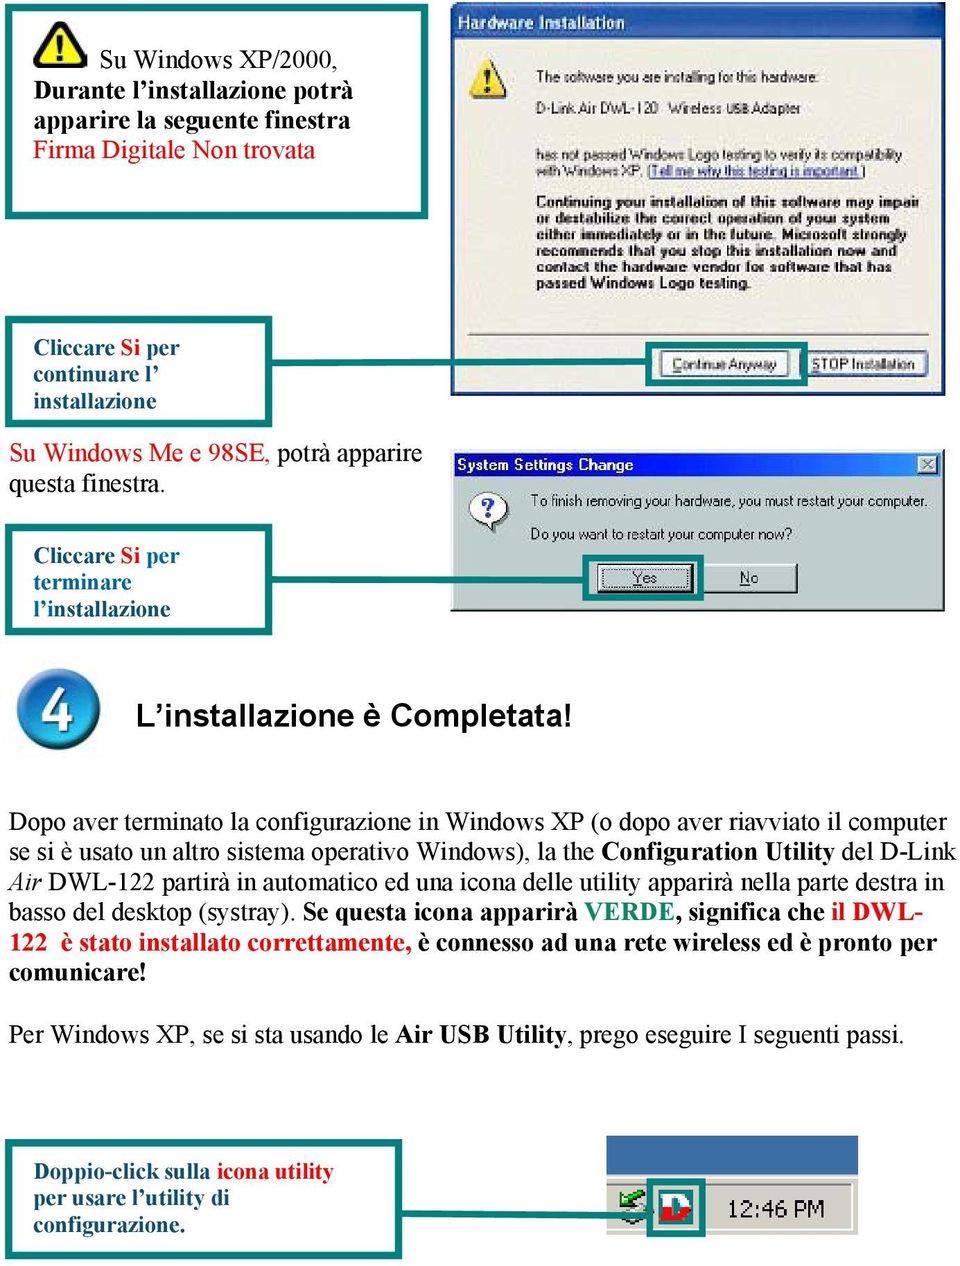 Dopo aver terminato la configurazione in Windows XP (o dopo aver riavviato il computer se si è usato un altro sistema operativo Windows), la the Configuration Utility del D-Link Air DWL-122 partirà